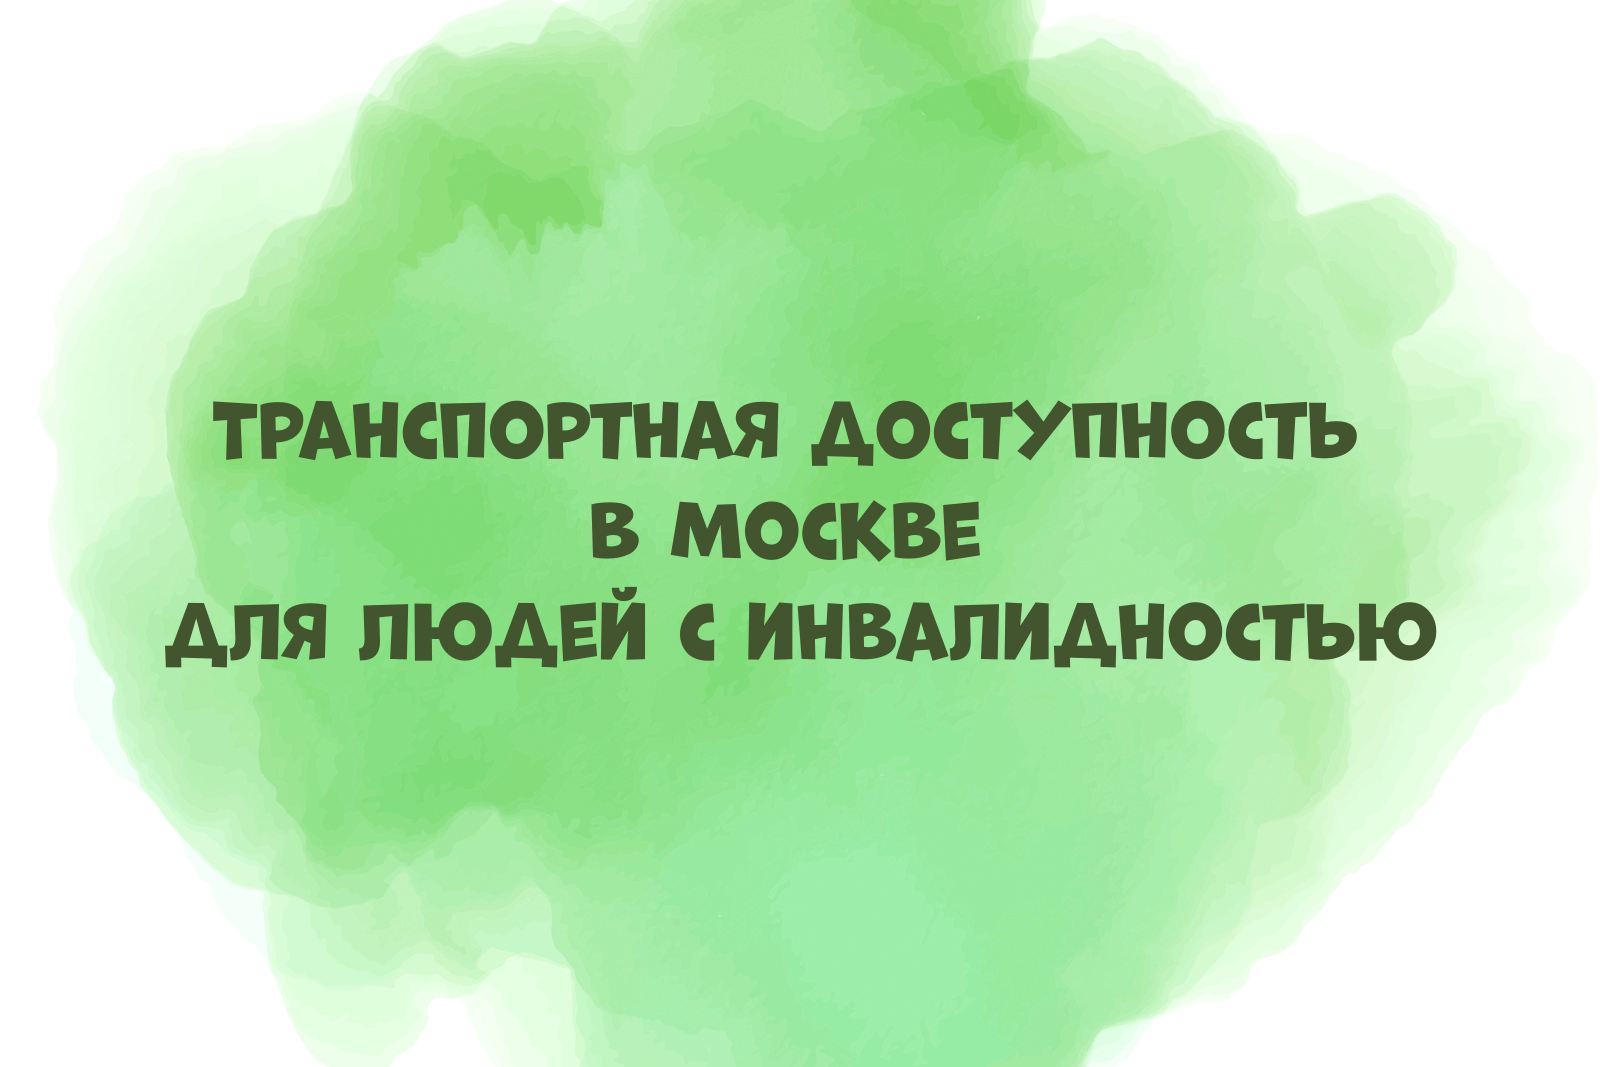 На зелёном акварельном пятне надпись "Транспортная доступность в Москве для людей с инвалидностью"